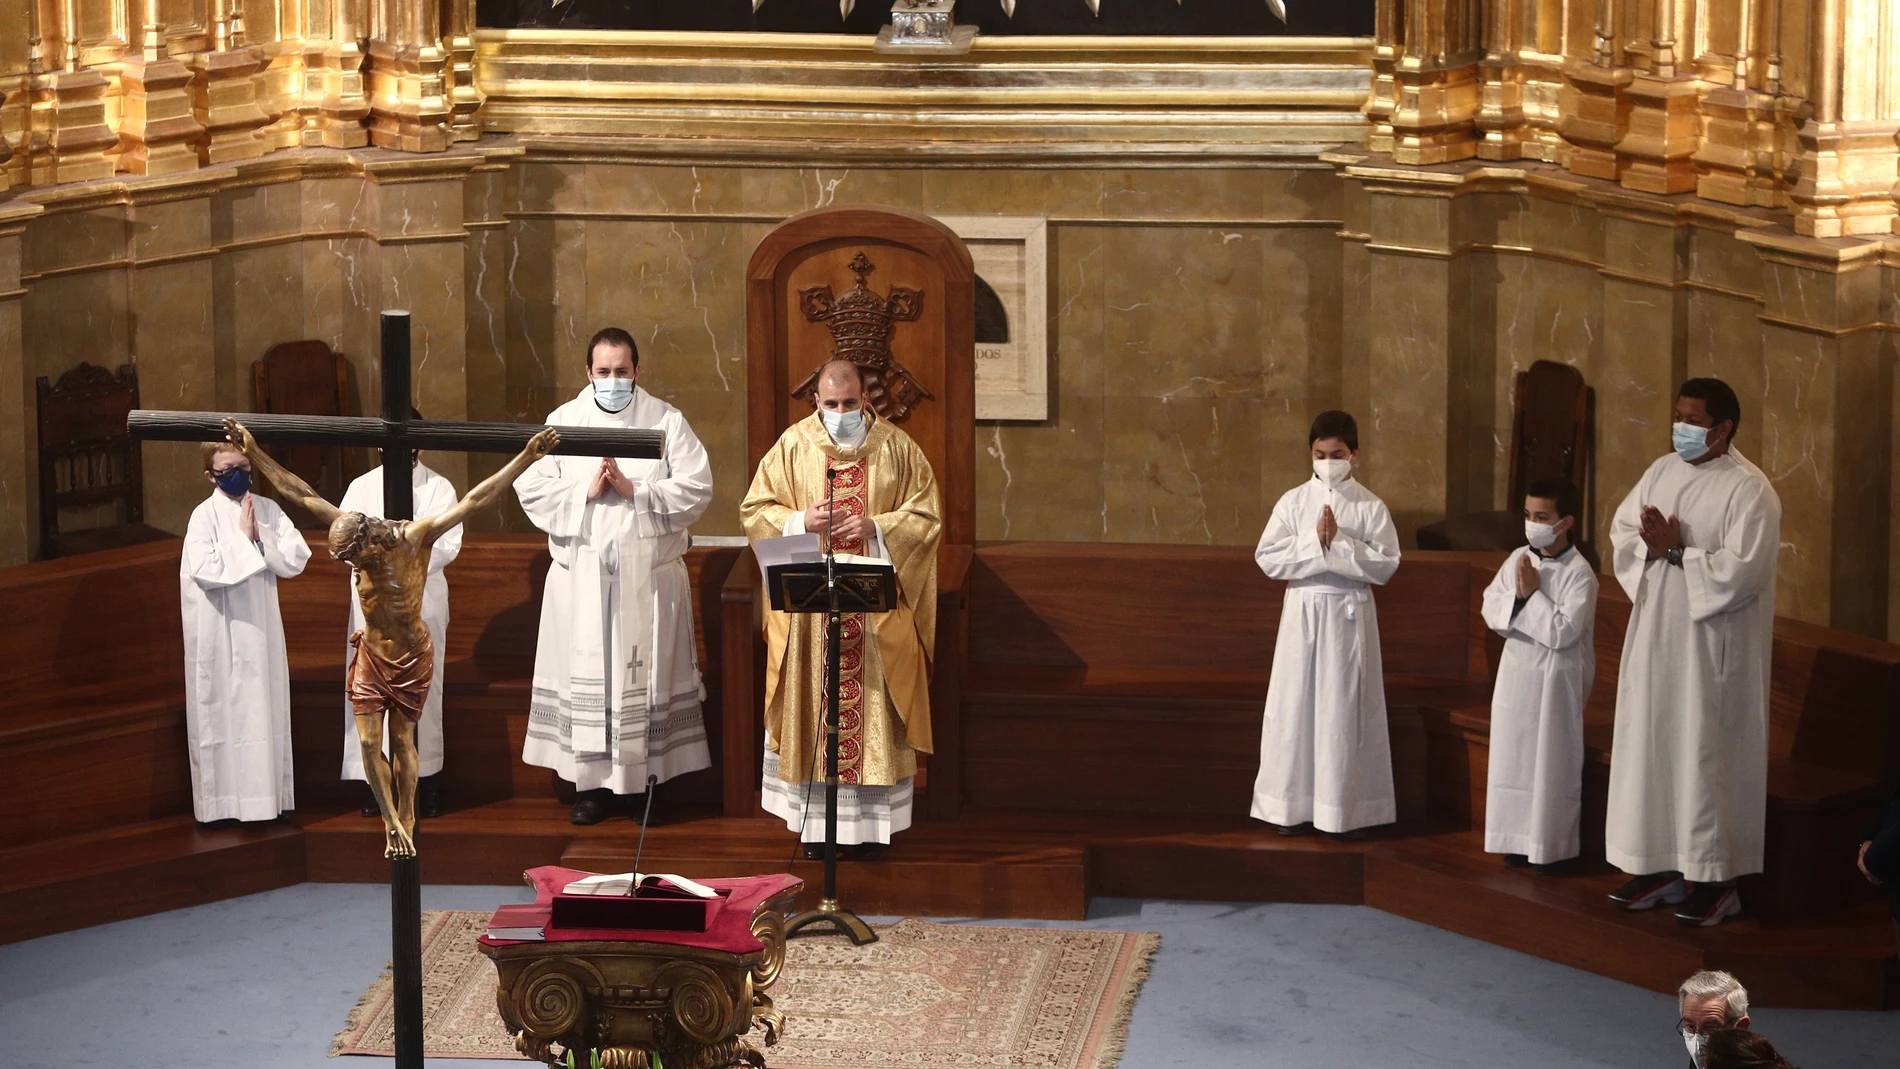 Eucaristía celebrada en la iglesia Virgen de la Paloma, en Madrid